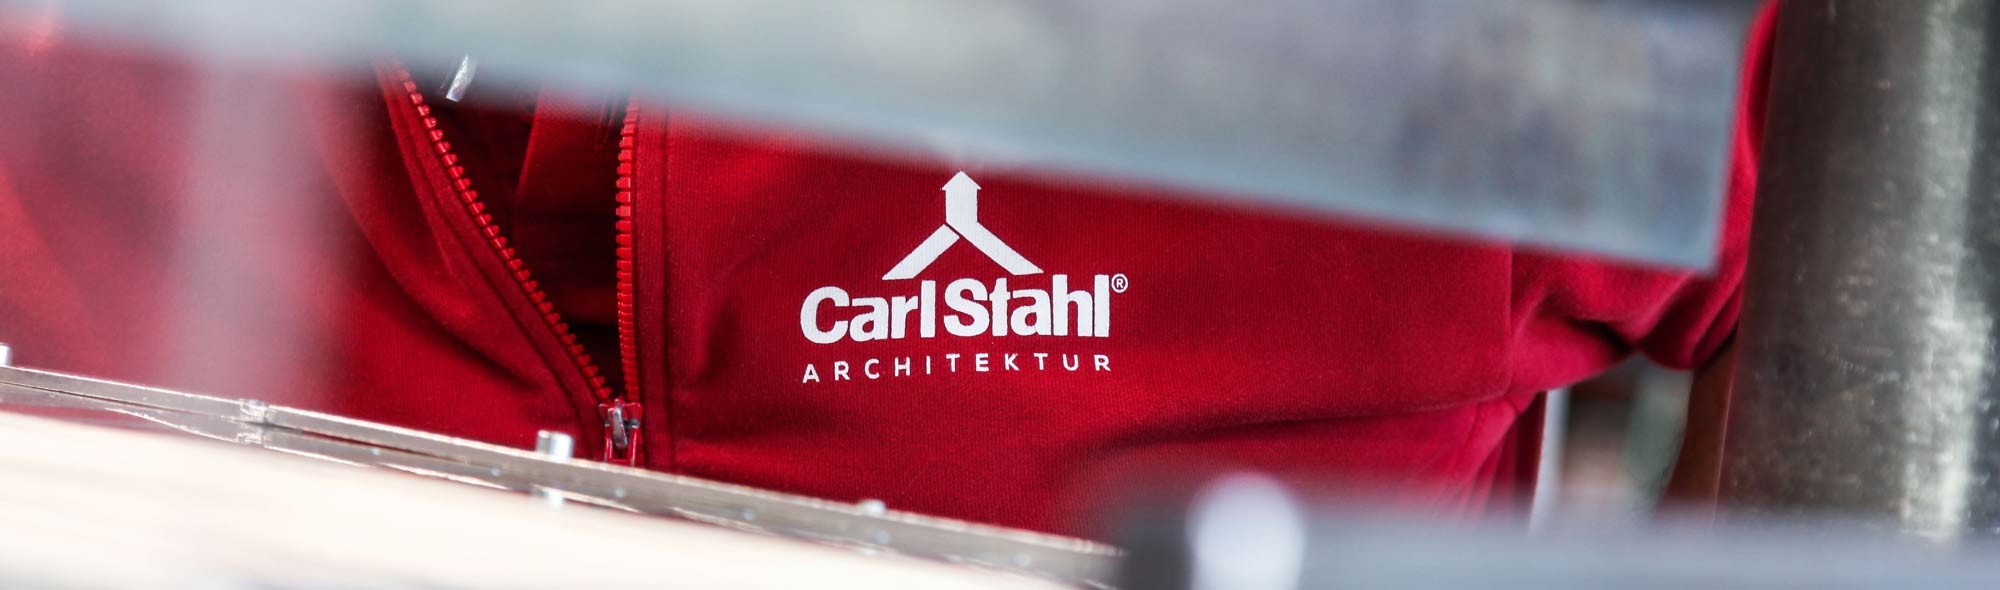 Karriere bei Carl Stahl Architektur